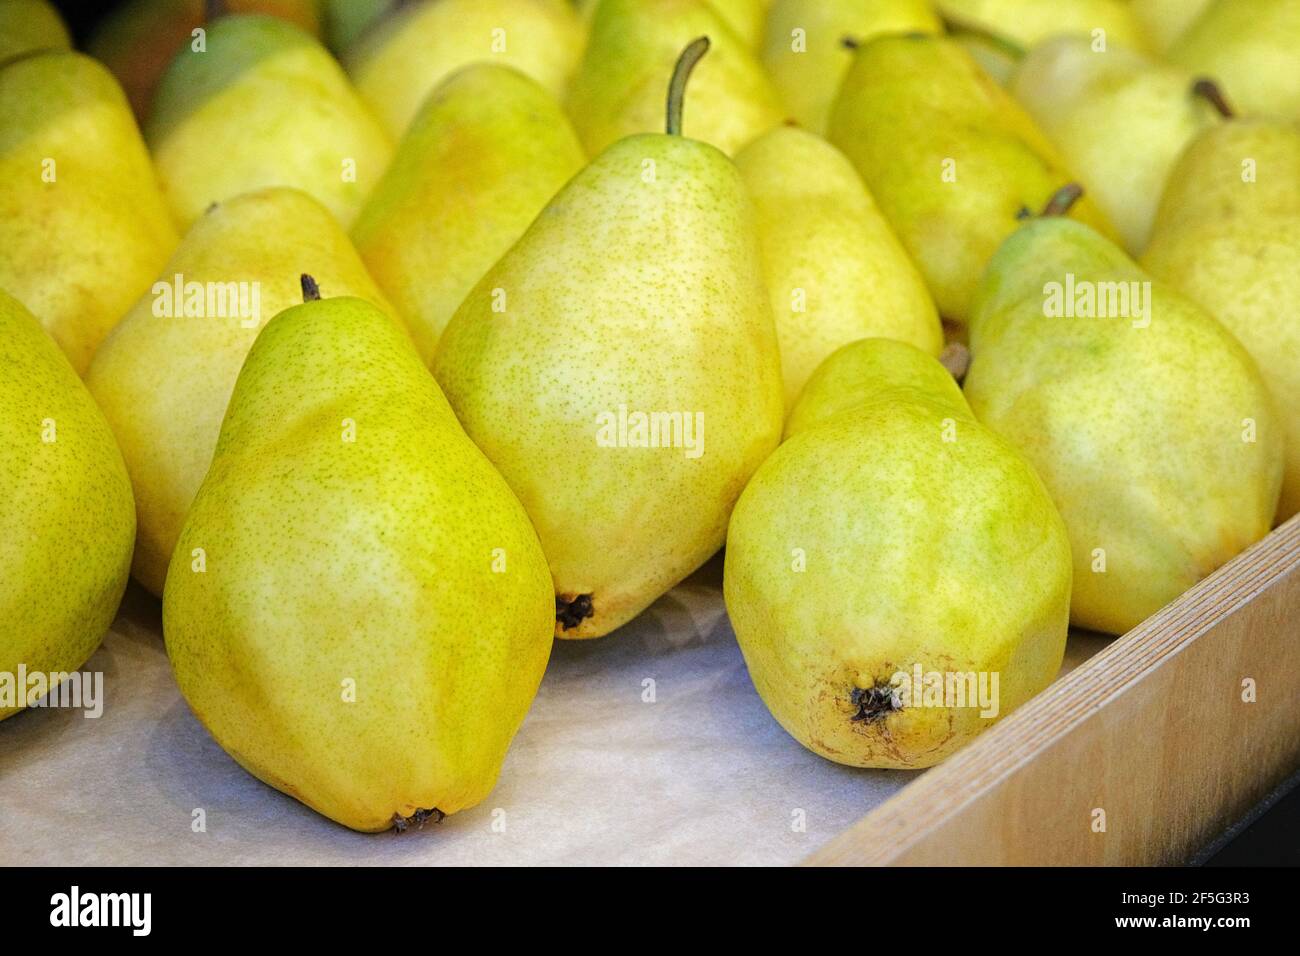 Un sacco di pere fresche e succose mature sono vendute presso il negozio di verdure. Le pere si trovano sullo scaffale nel negozio di alimentari. Foto Stock